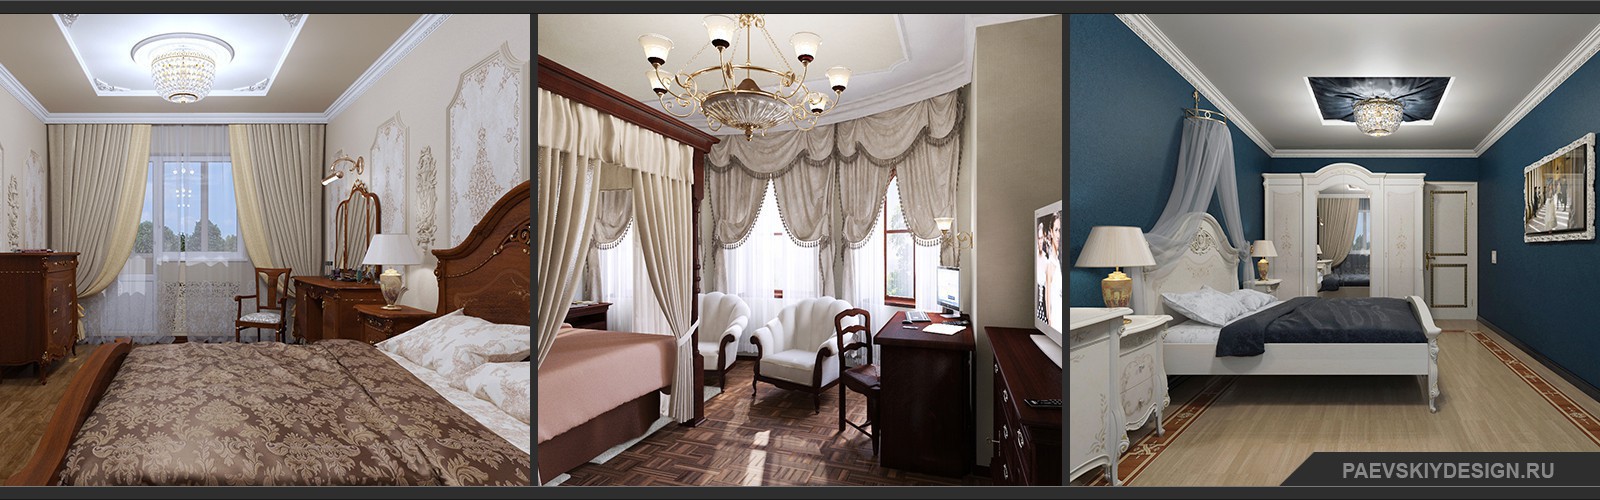 Дизайн проект спальни в загородном доме квартире Москва